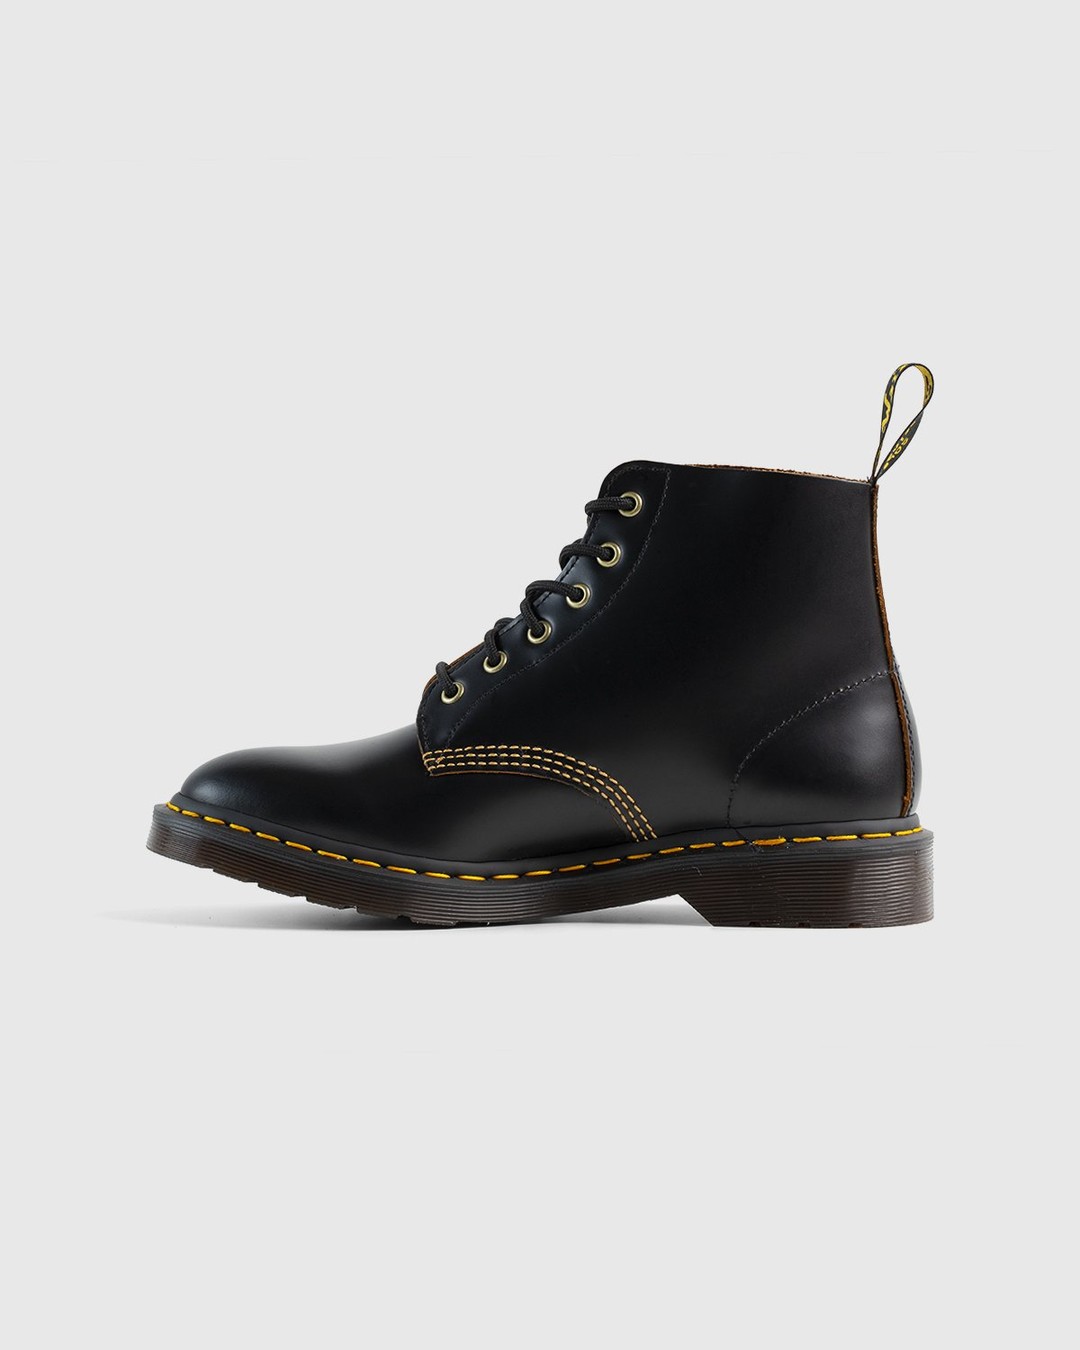 Dr. Martens – 101 Arc Black Vintage Smooth - Boots - Black - Image 2